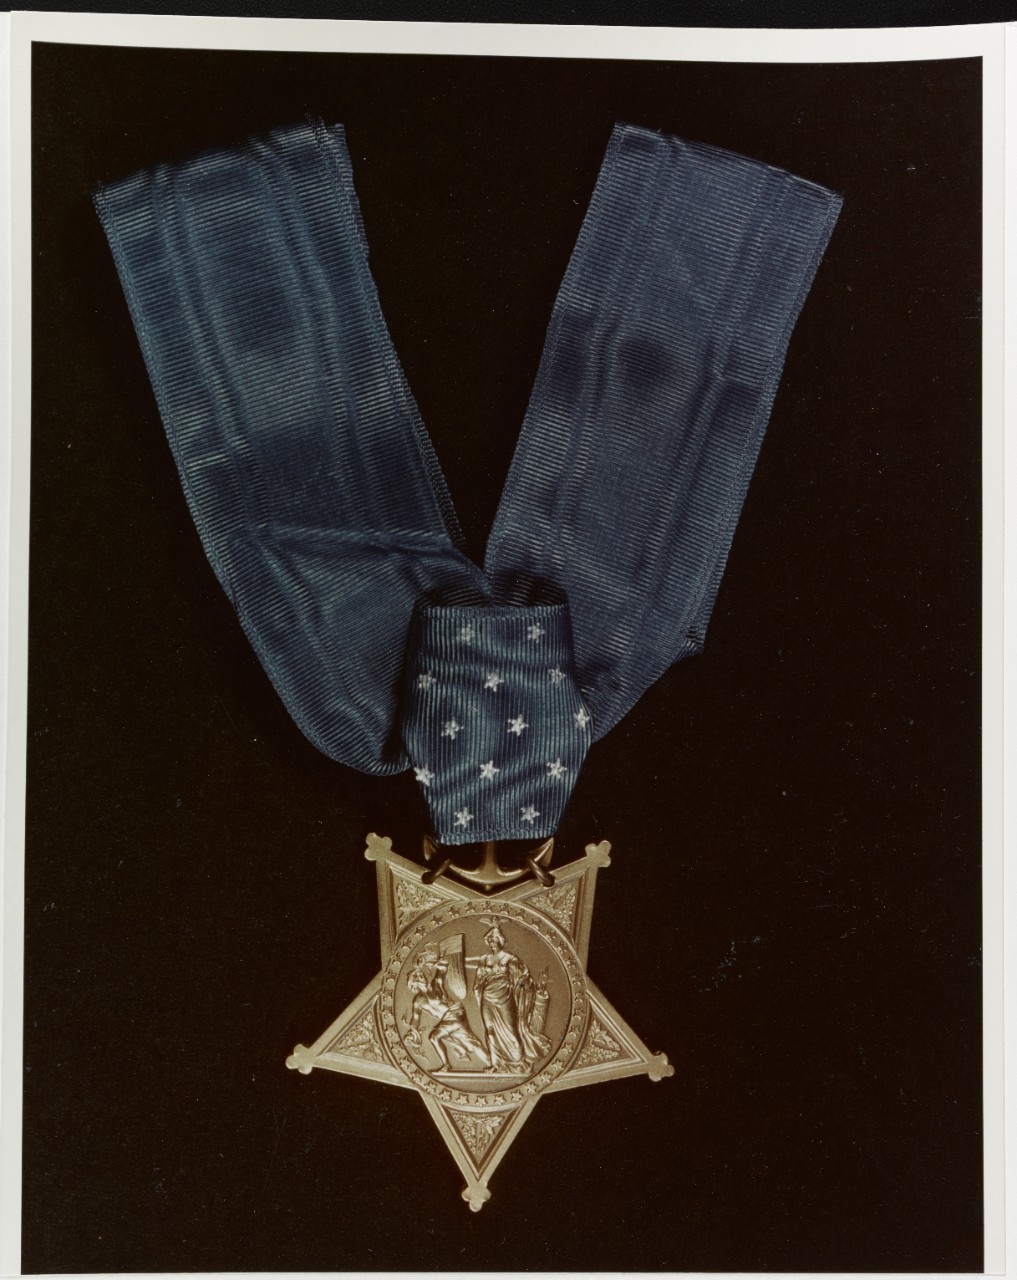 Photo #: 80-G-K-13587 U.S. Navy Medal of Honor